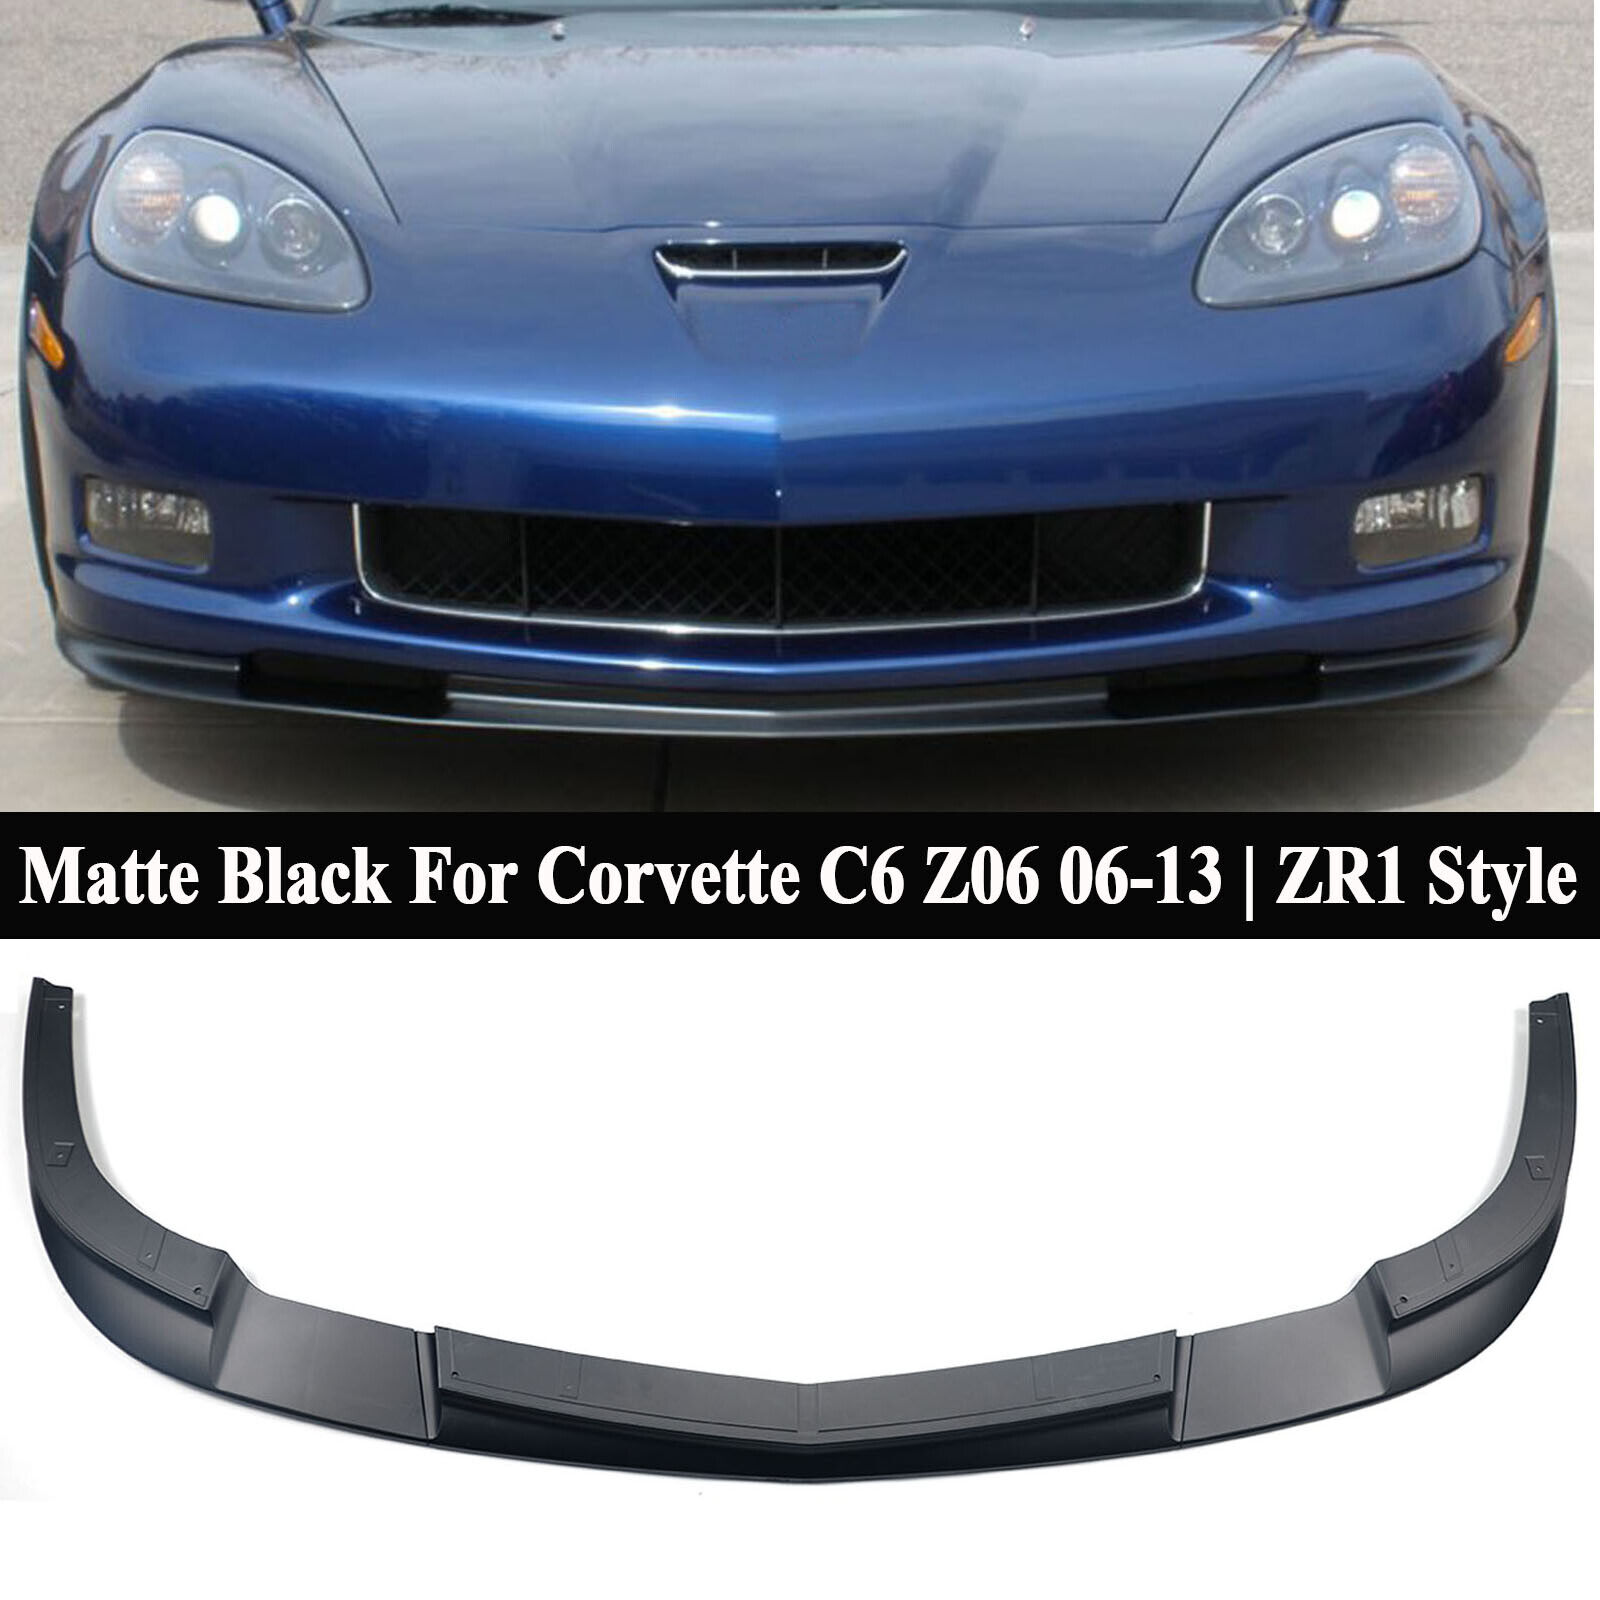 For Corvette C6 Z06 06-13 | ZR1 Style Black Front Bumper Splitter Lip Spoiler